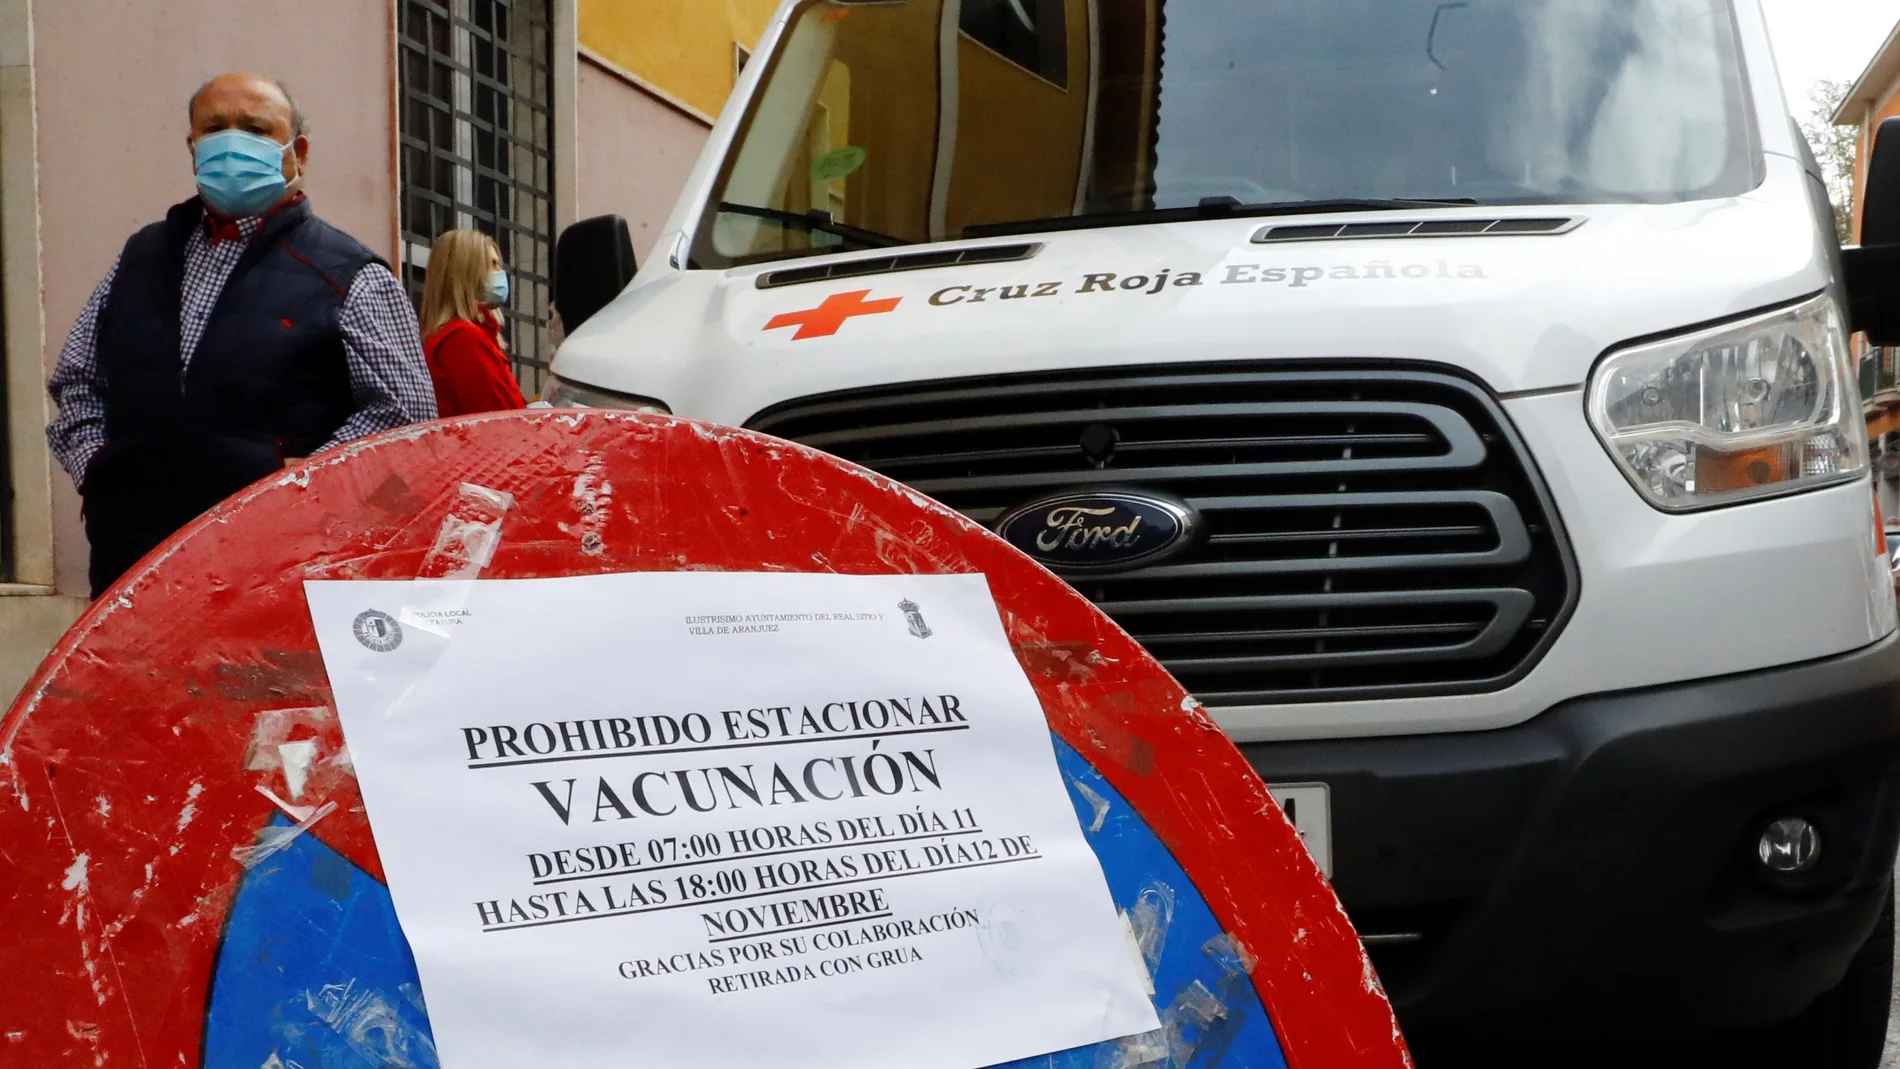 Campaña de vacunación contra la gripe de la Cruz Roja en la localidad madrileña de Aranjuez.